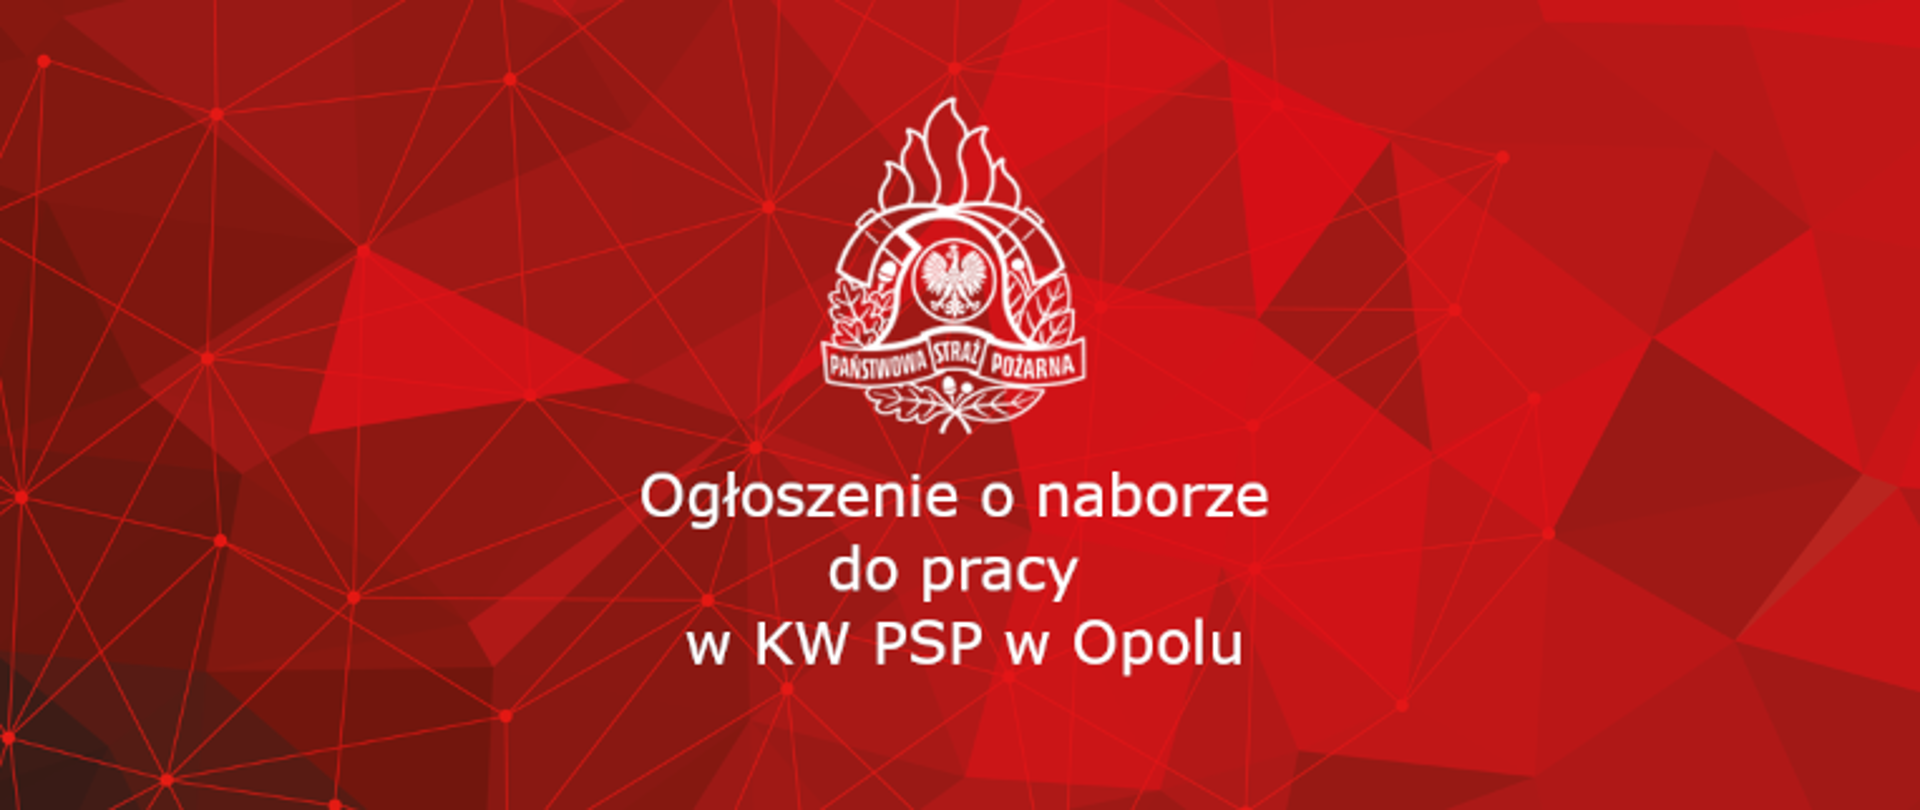 Ogłoszenie o naborze do pracy w KW PSP w Opolu.